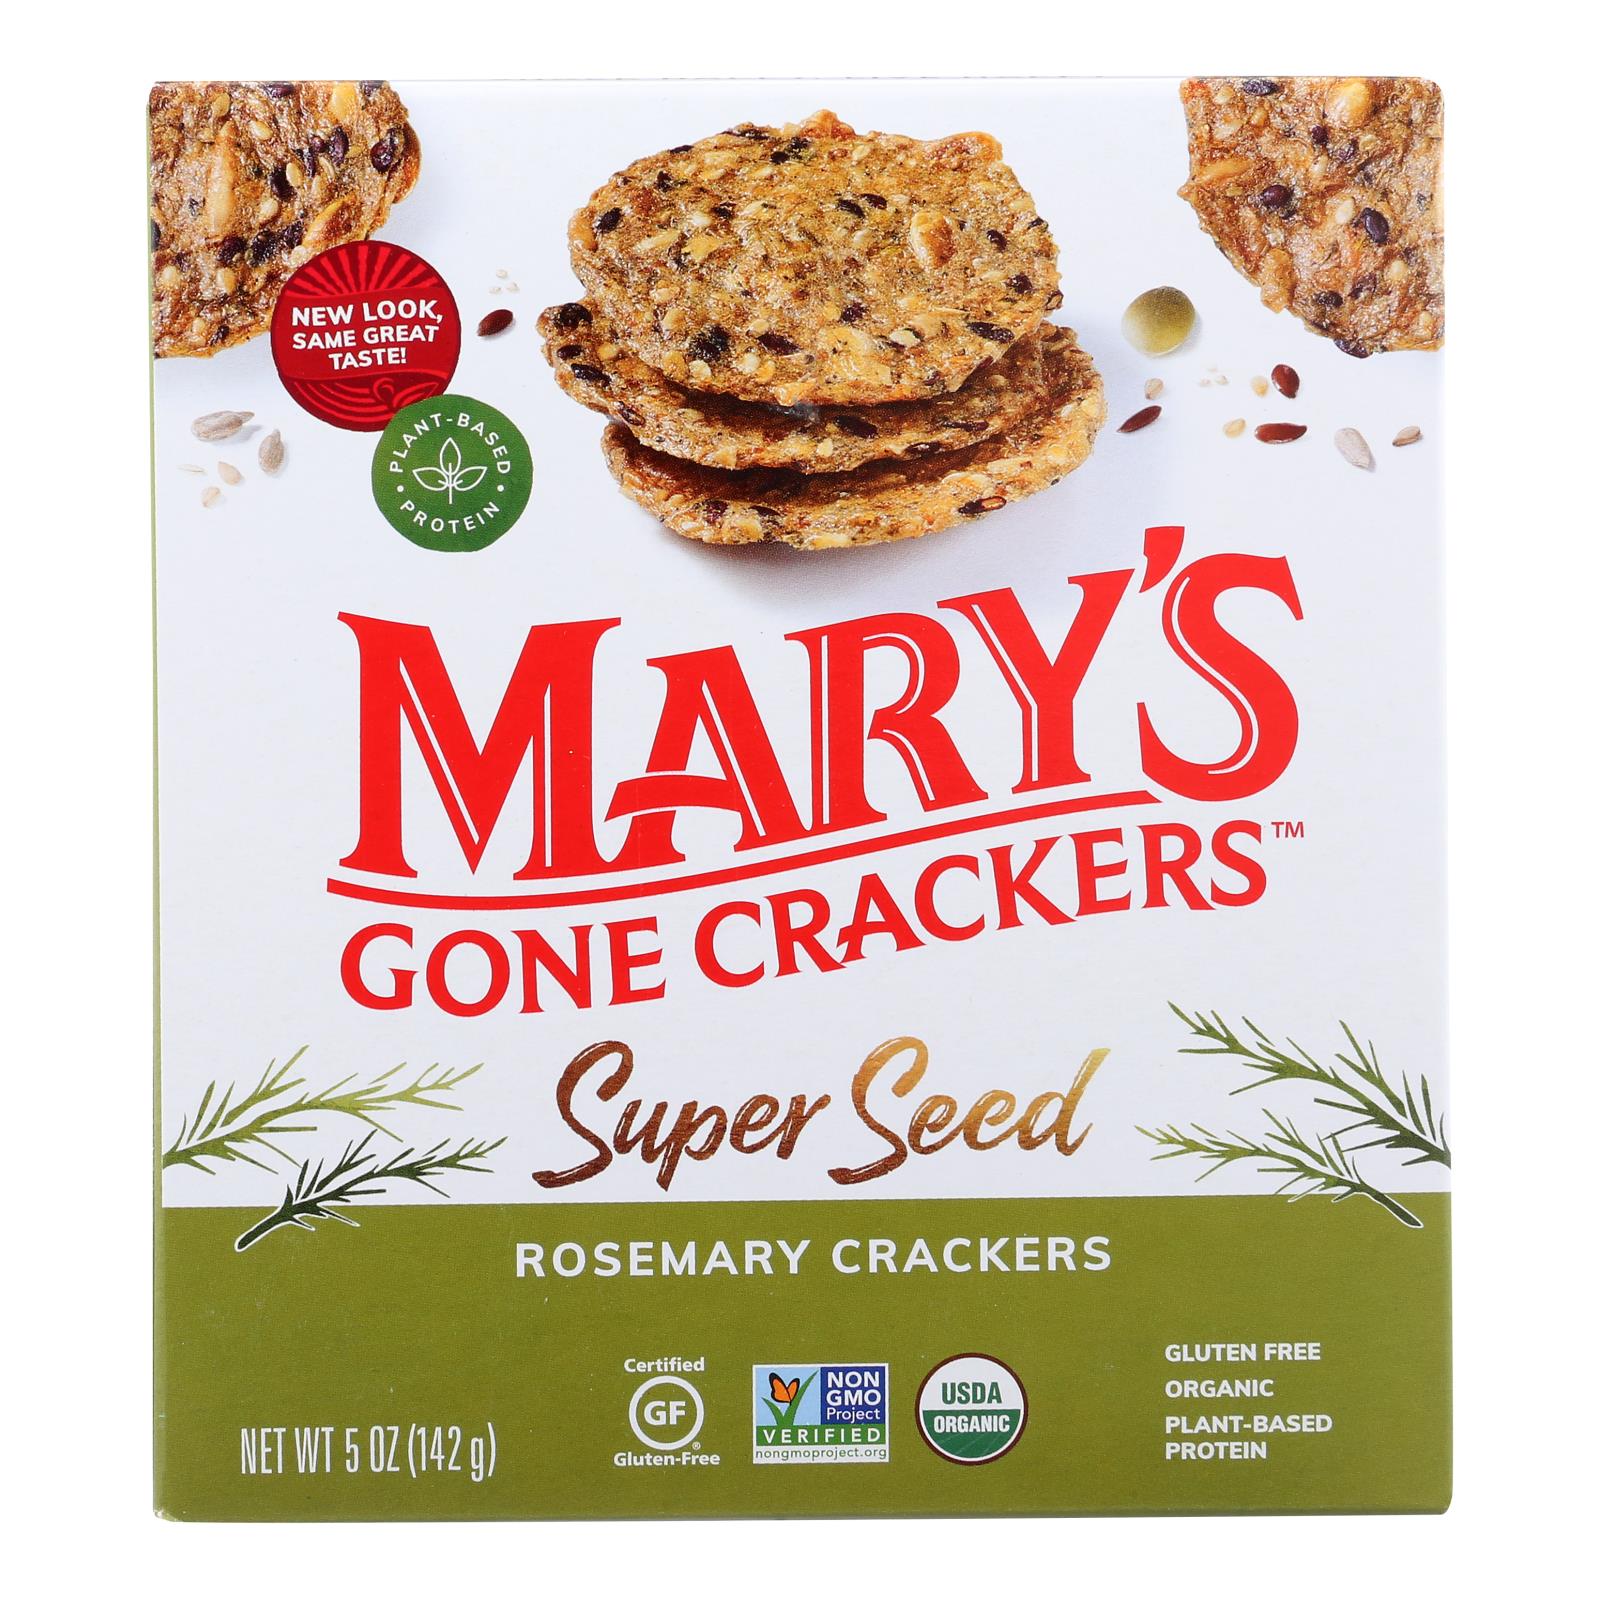 Craquelins de Mary's Gone, Mary's Gone Crackers - Cracker au romarin - Caisse de 6 - 5.00 OZ (paquet de 6)